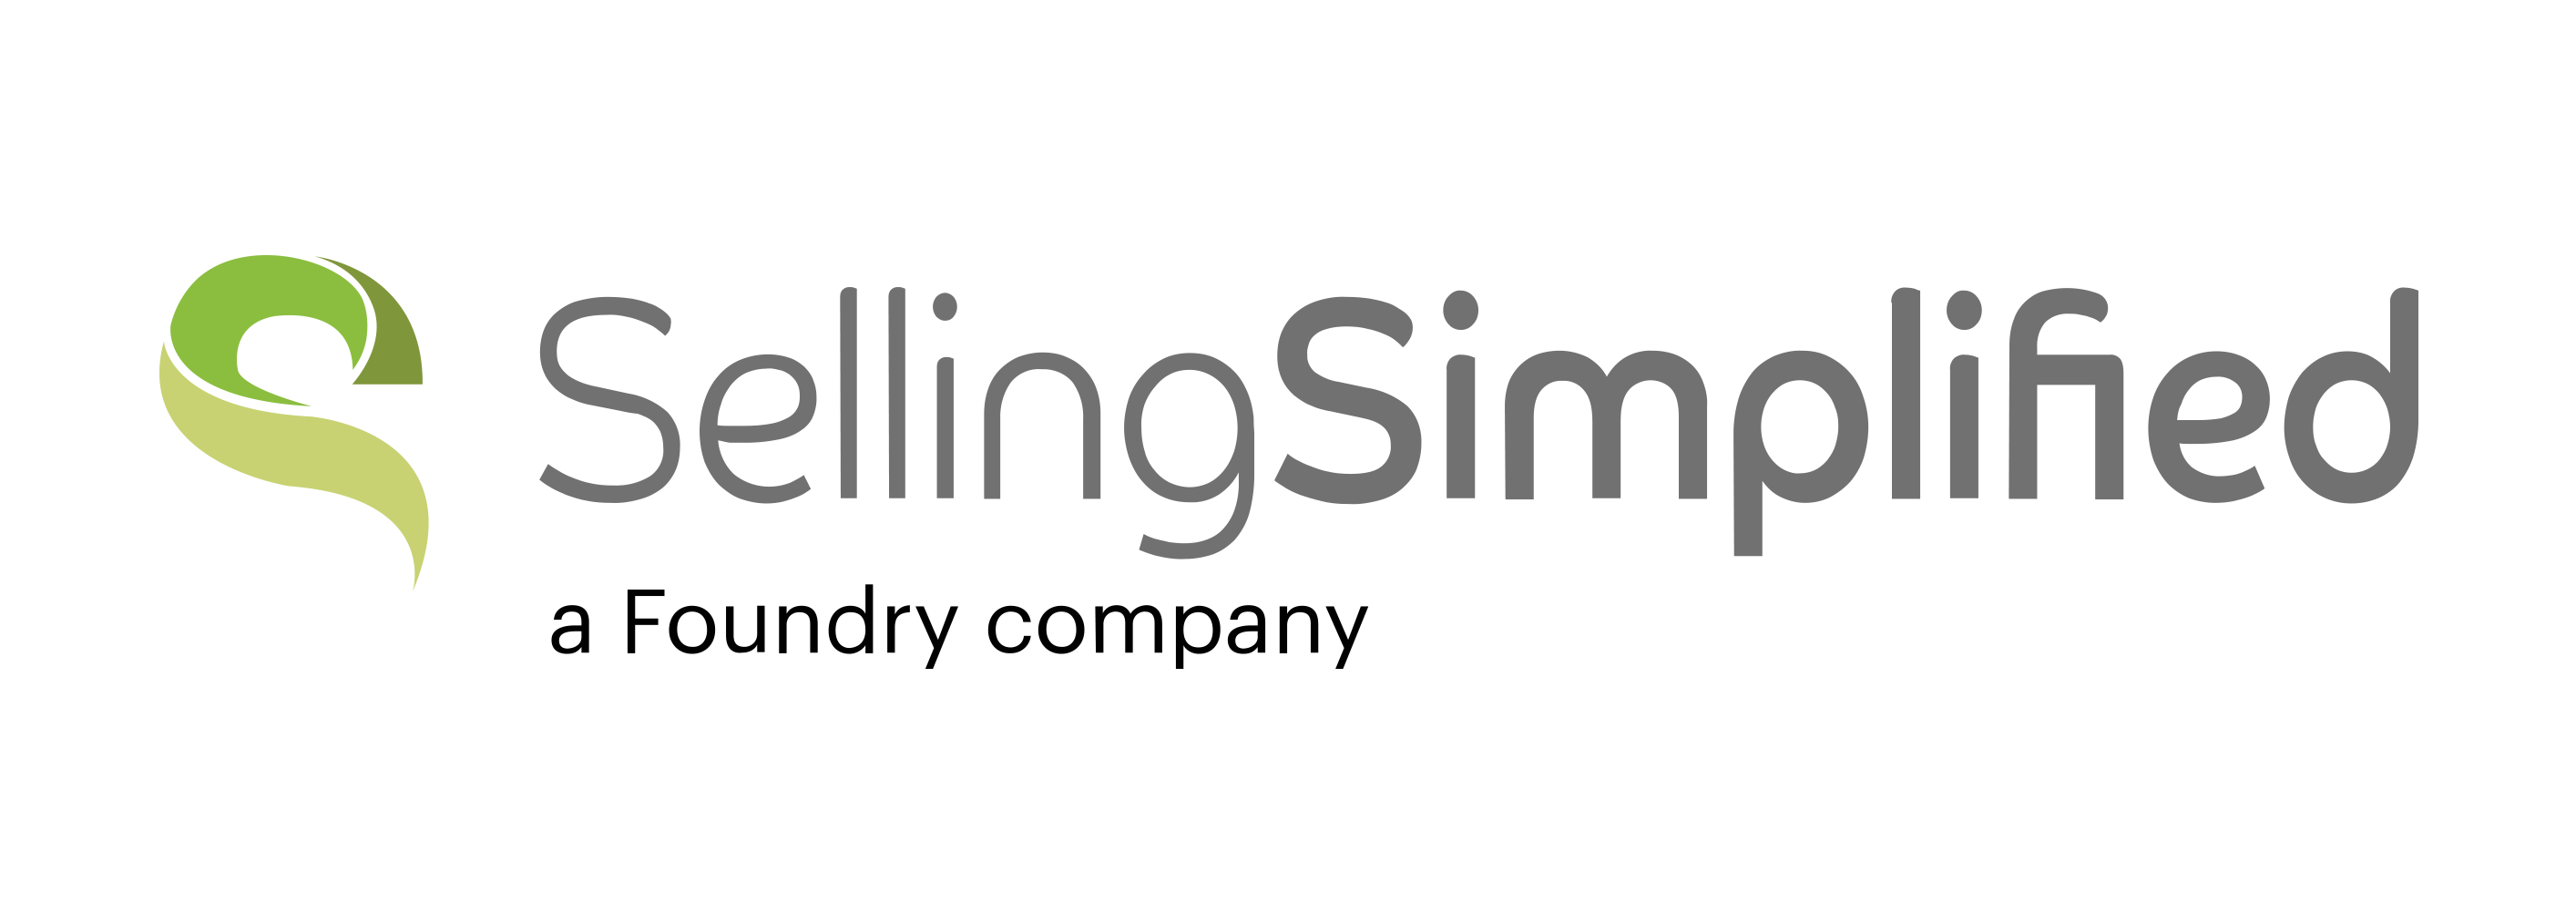 Selling Simplified-01